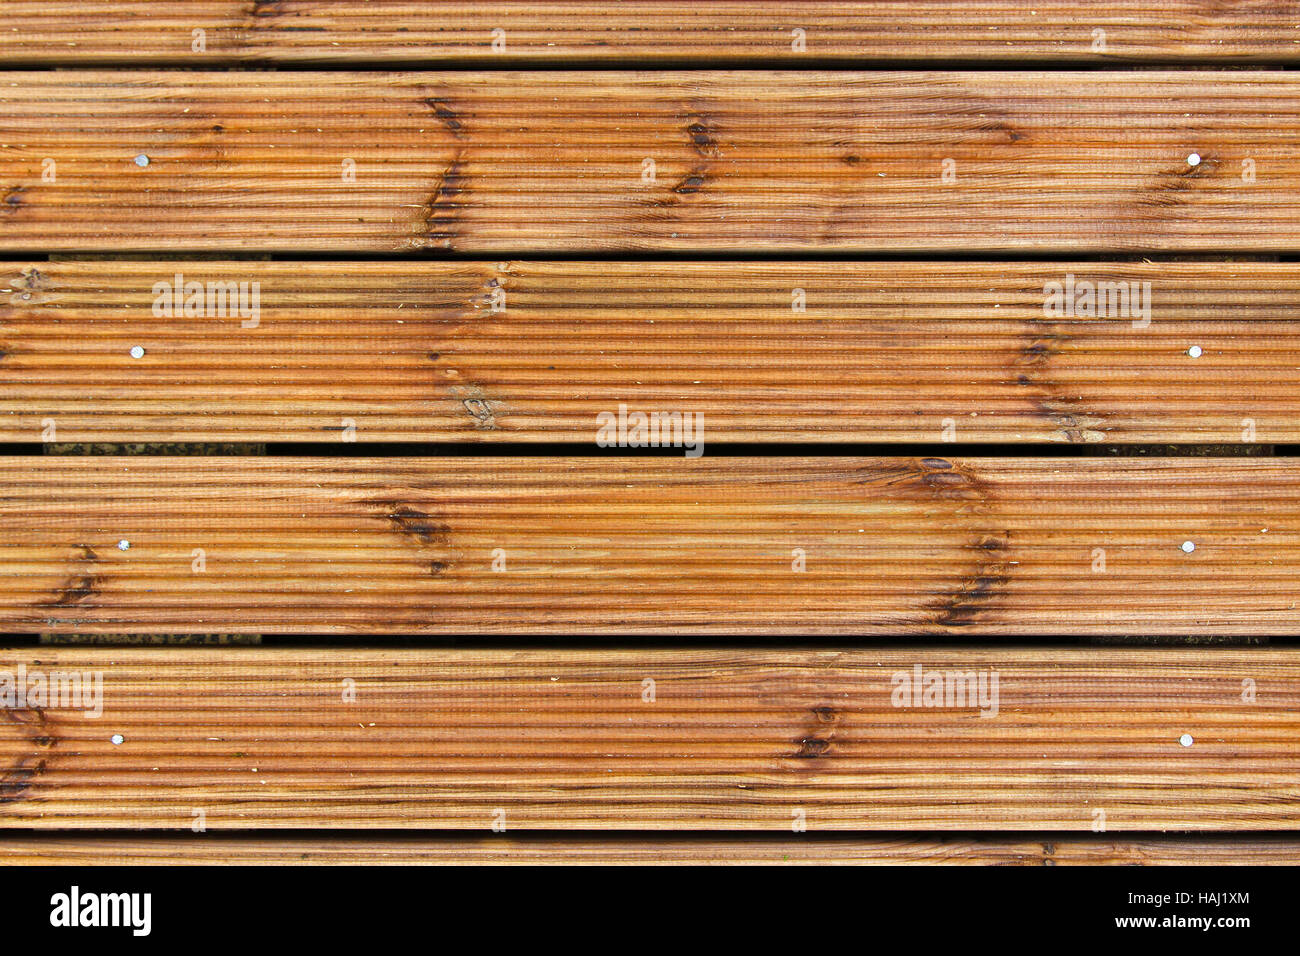 Terraza de tablones de madera marrón decking Foto de stock